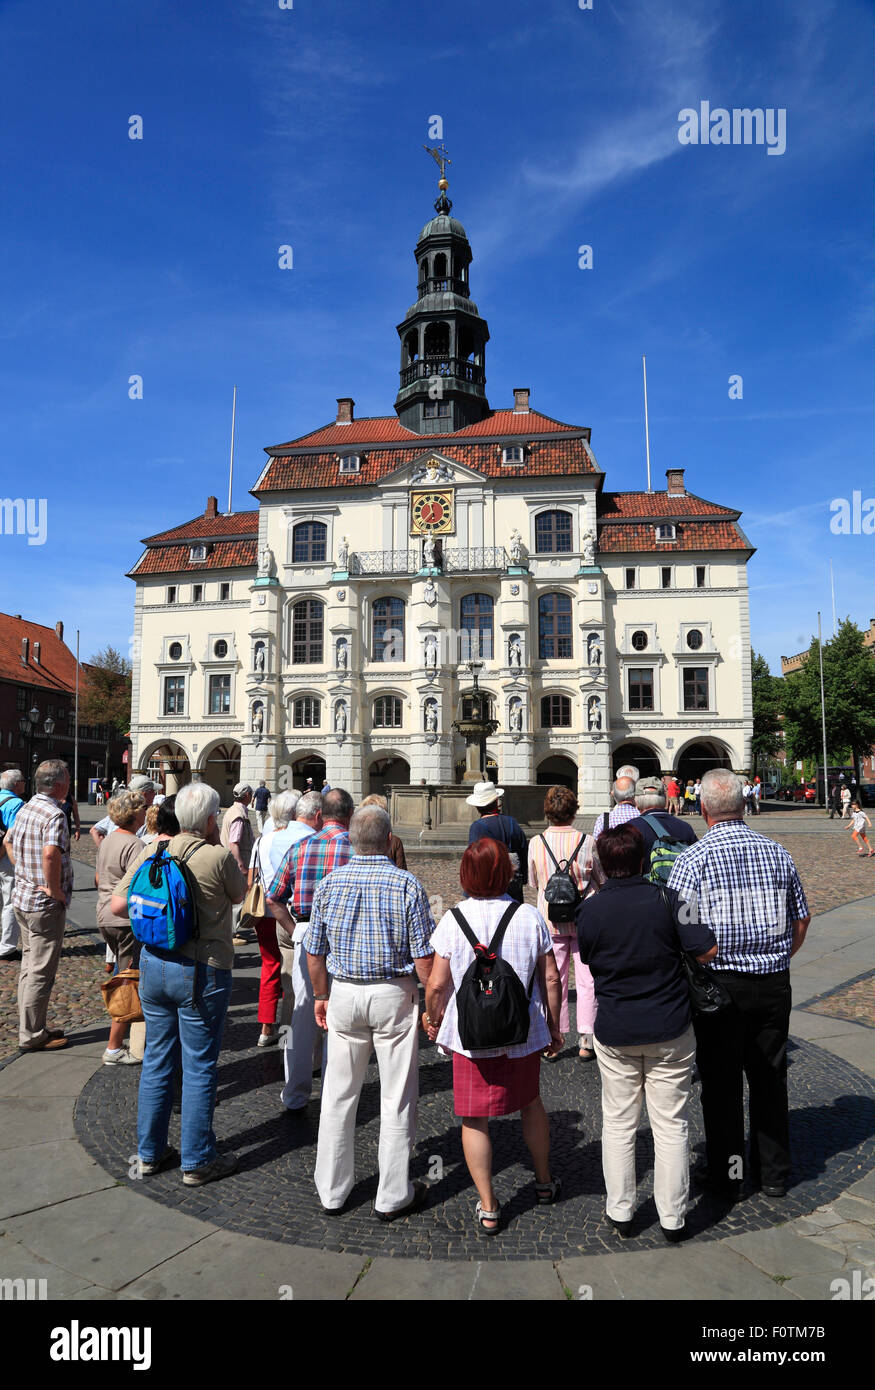 Geführte Stadtrundfahrt am Marktplatz vor dem Rathaus, Lüneburg, Lüneburg, Niedersachsen, Deutschland, Europa Stockfoto